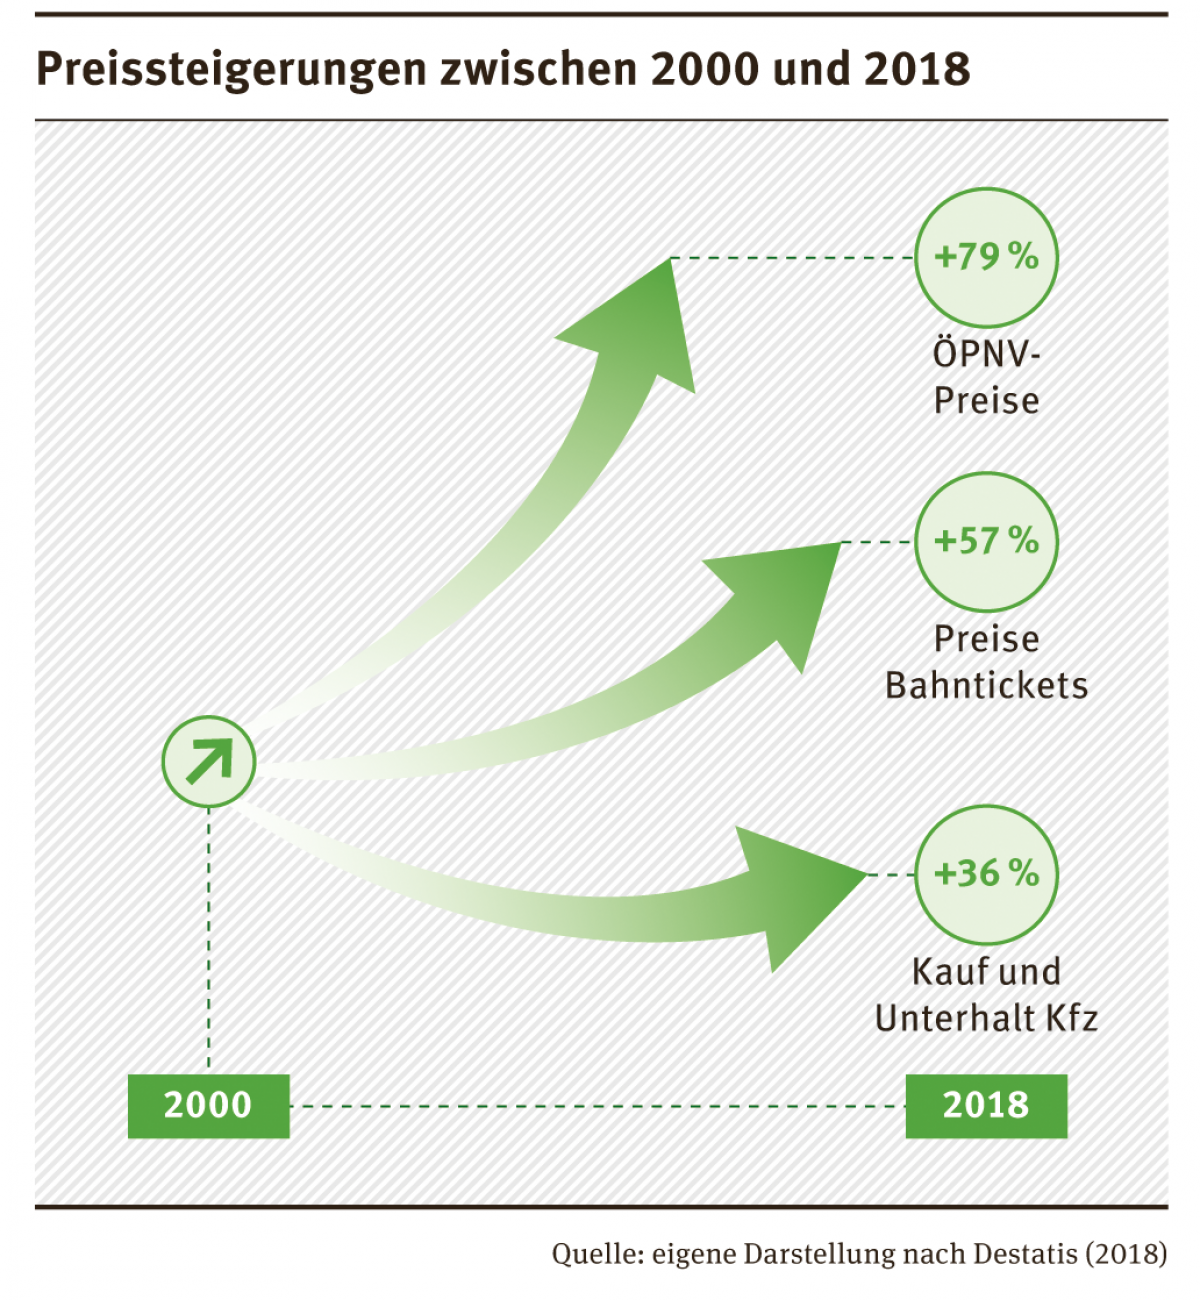 Preissteigerung im Verkehr zwischen 2000 und 2018